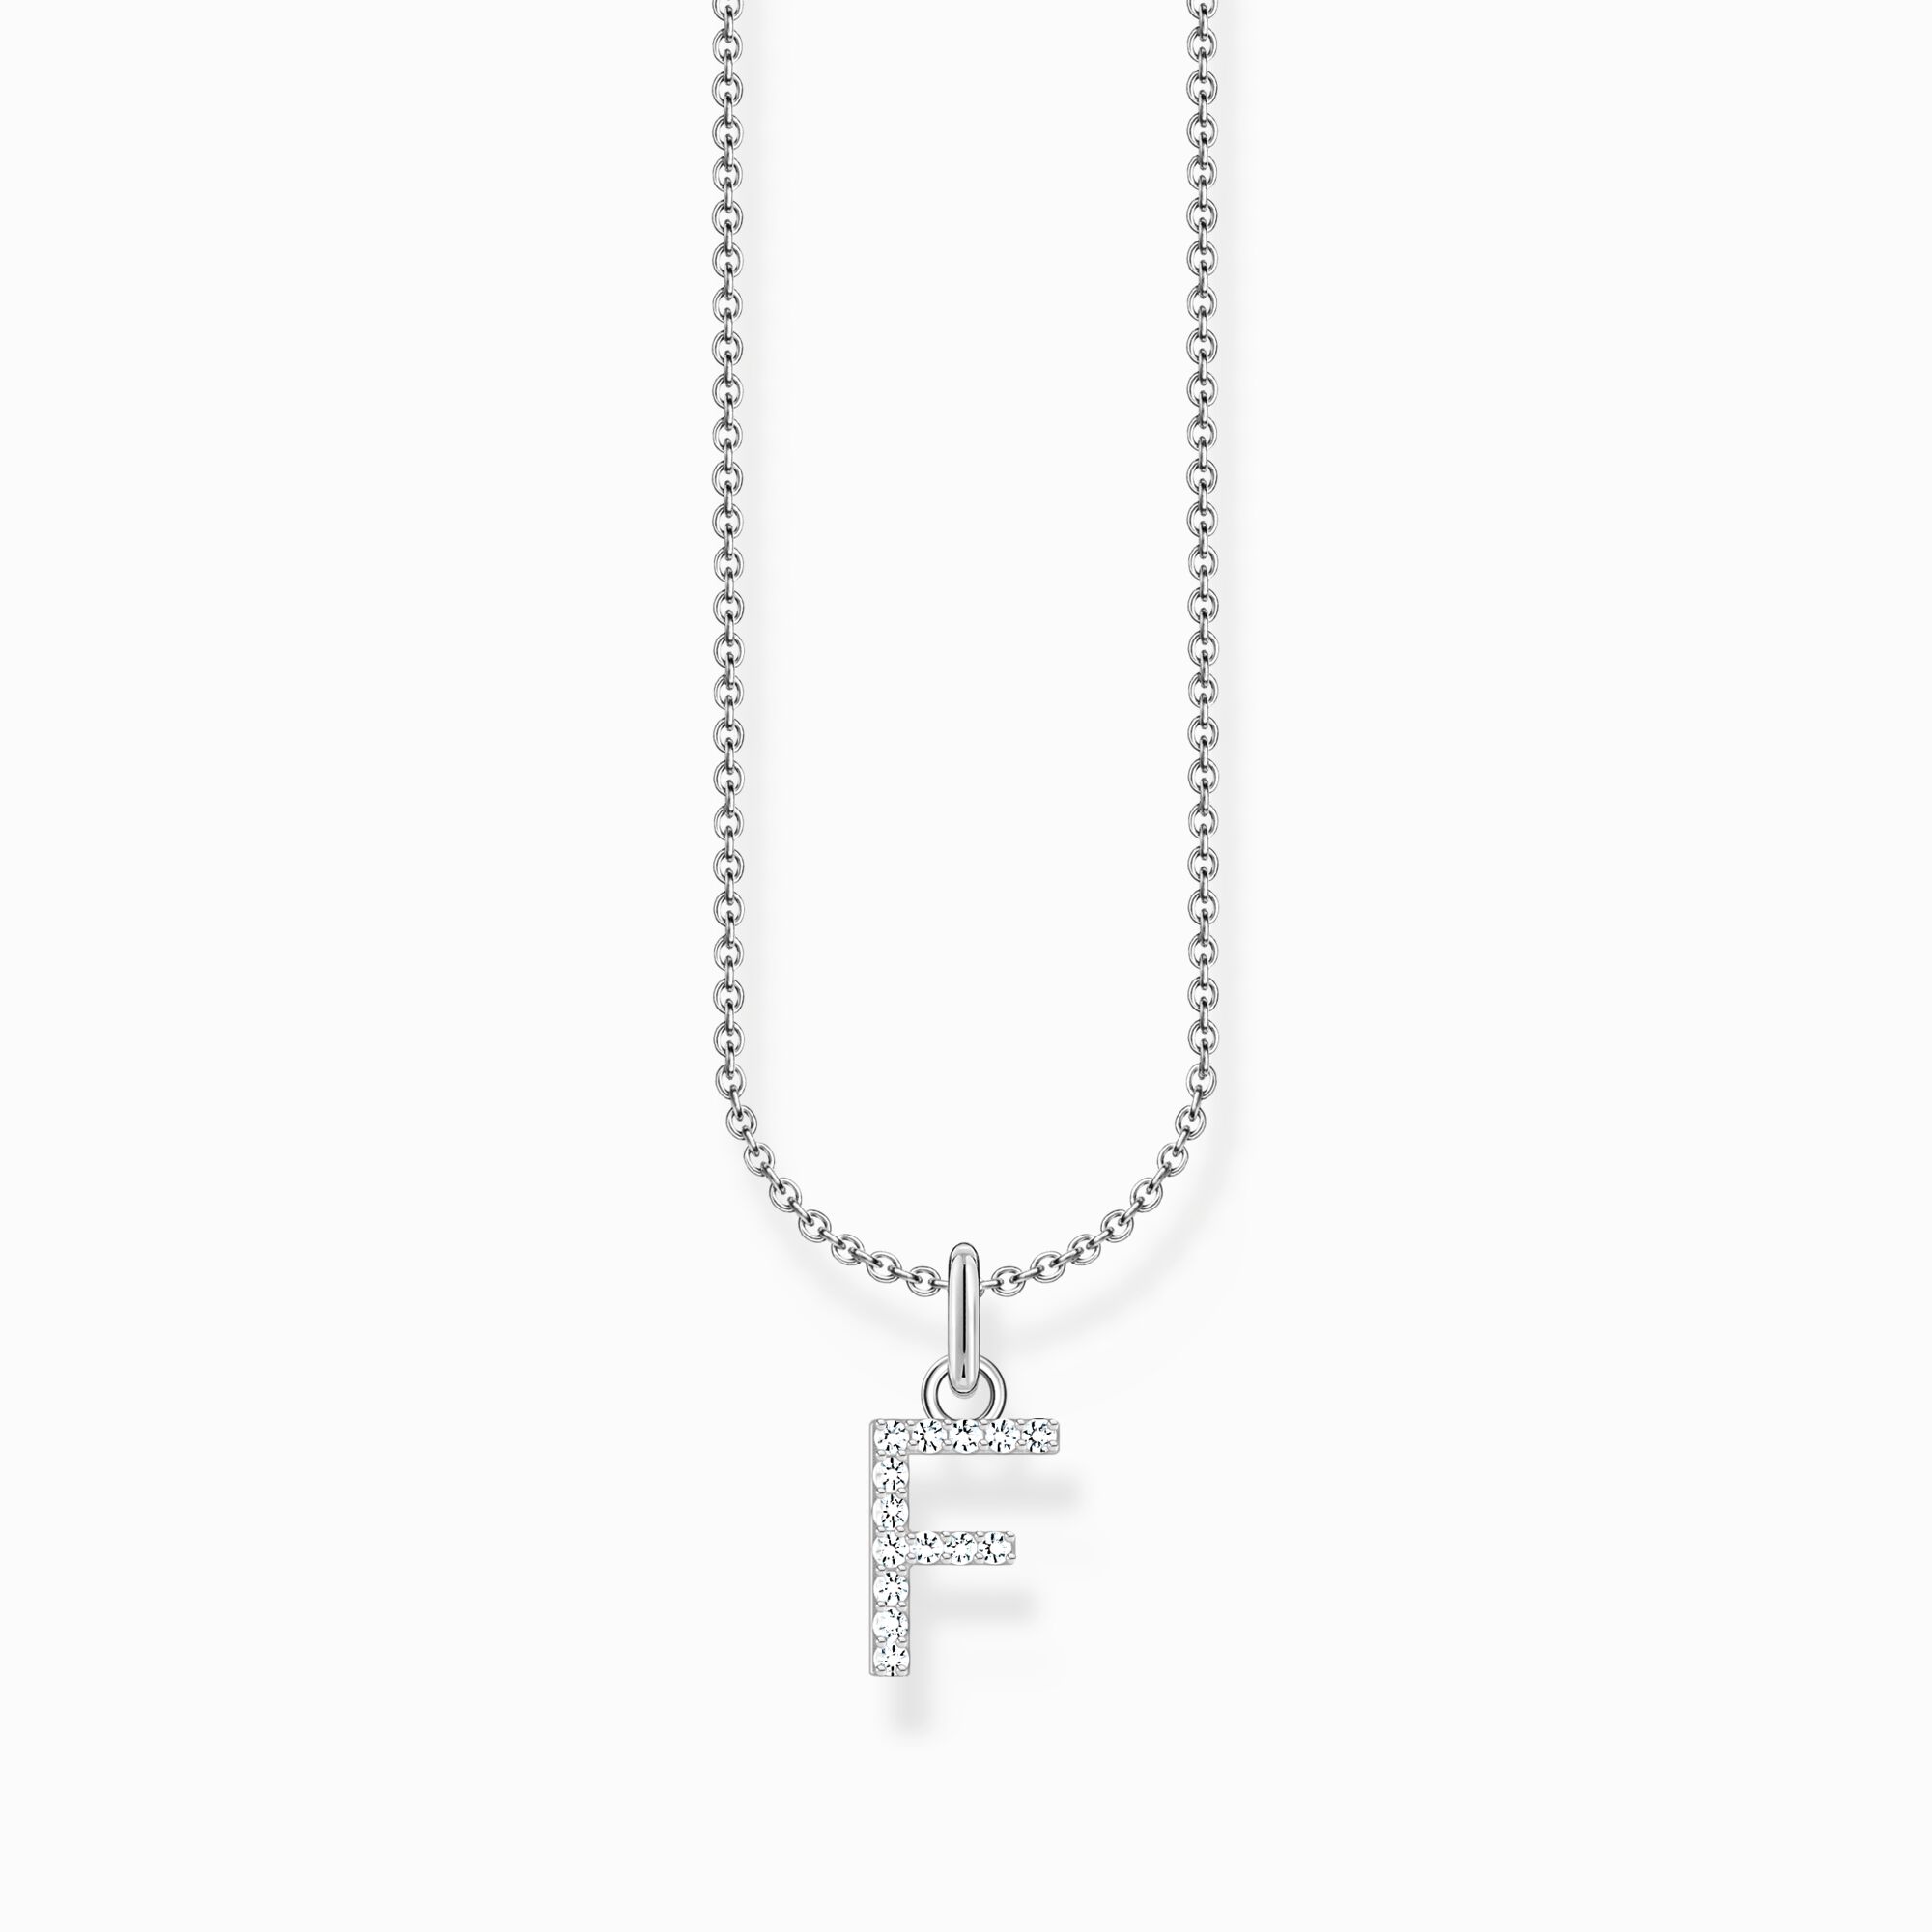 Halsband med bokstaven F, silver ur kollektionen Charming Collection i THOMAS SABO:s onlineshop